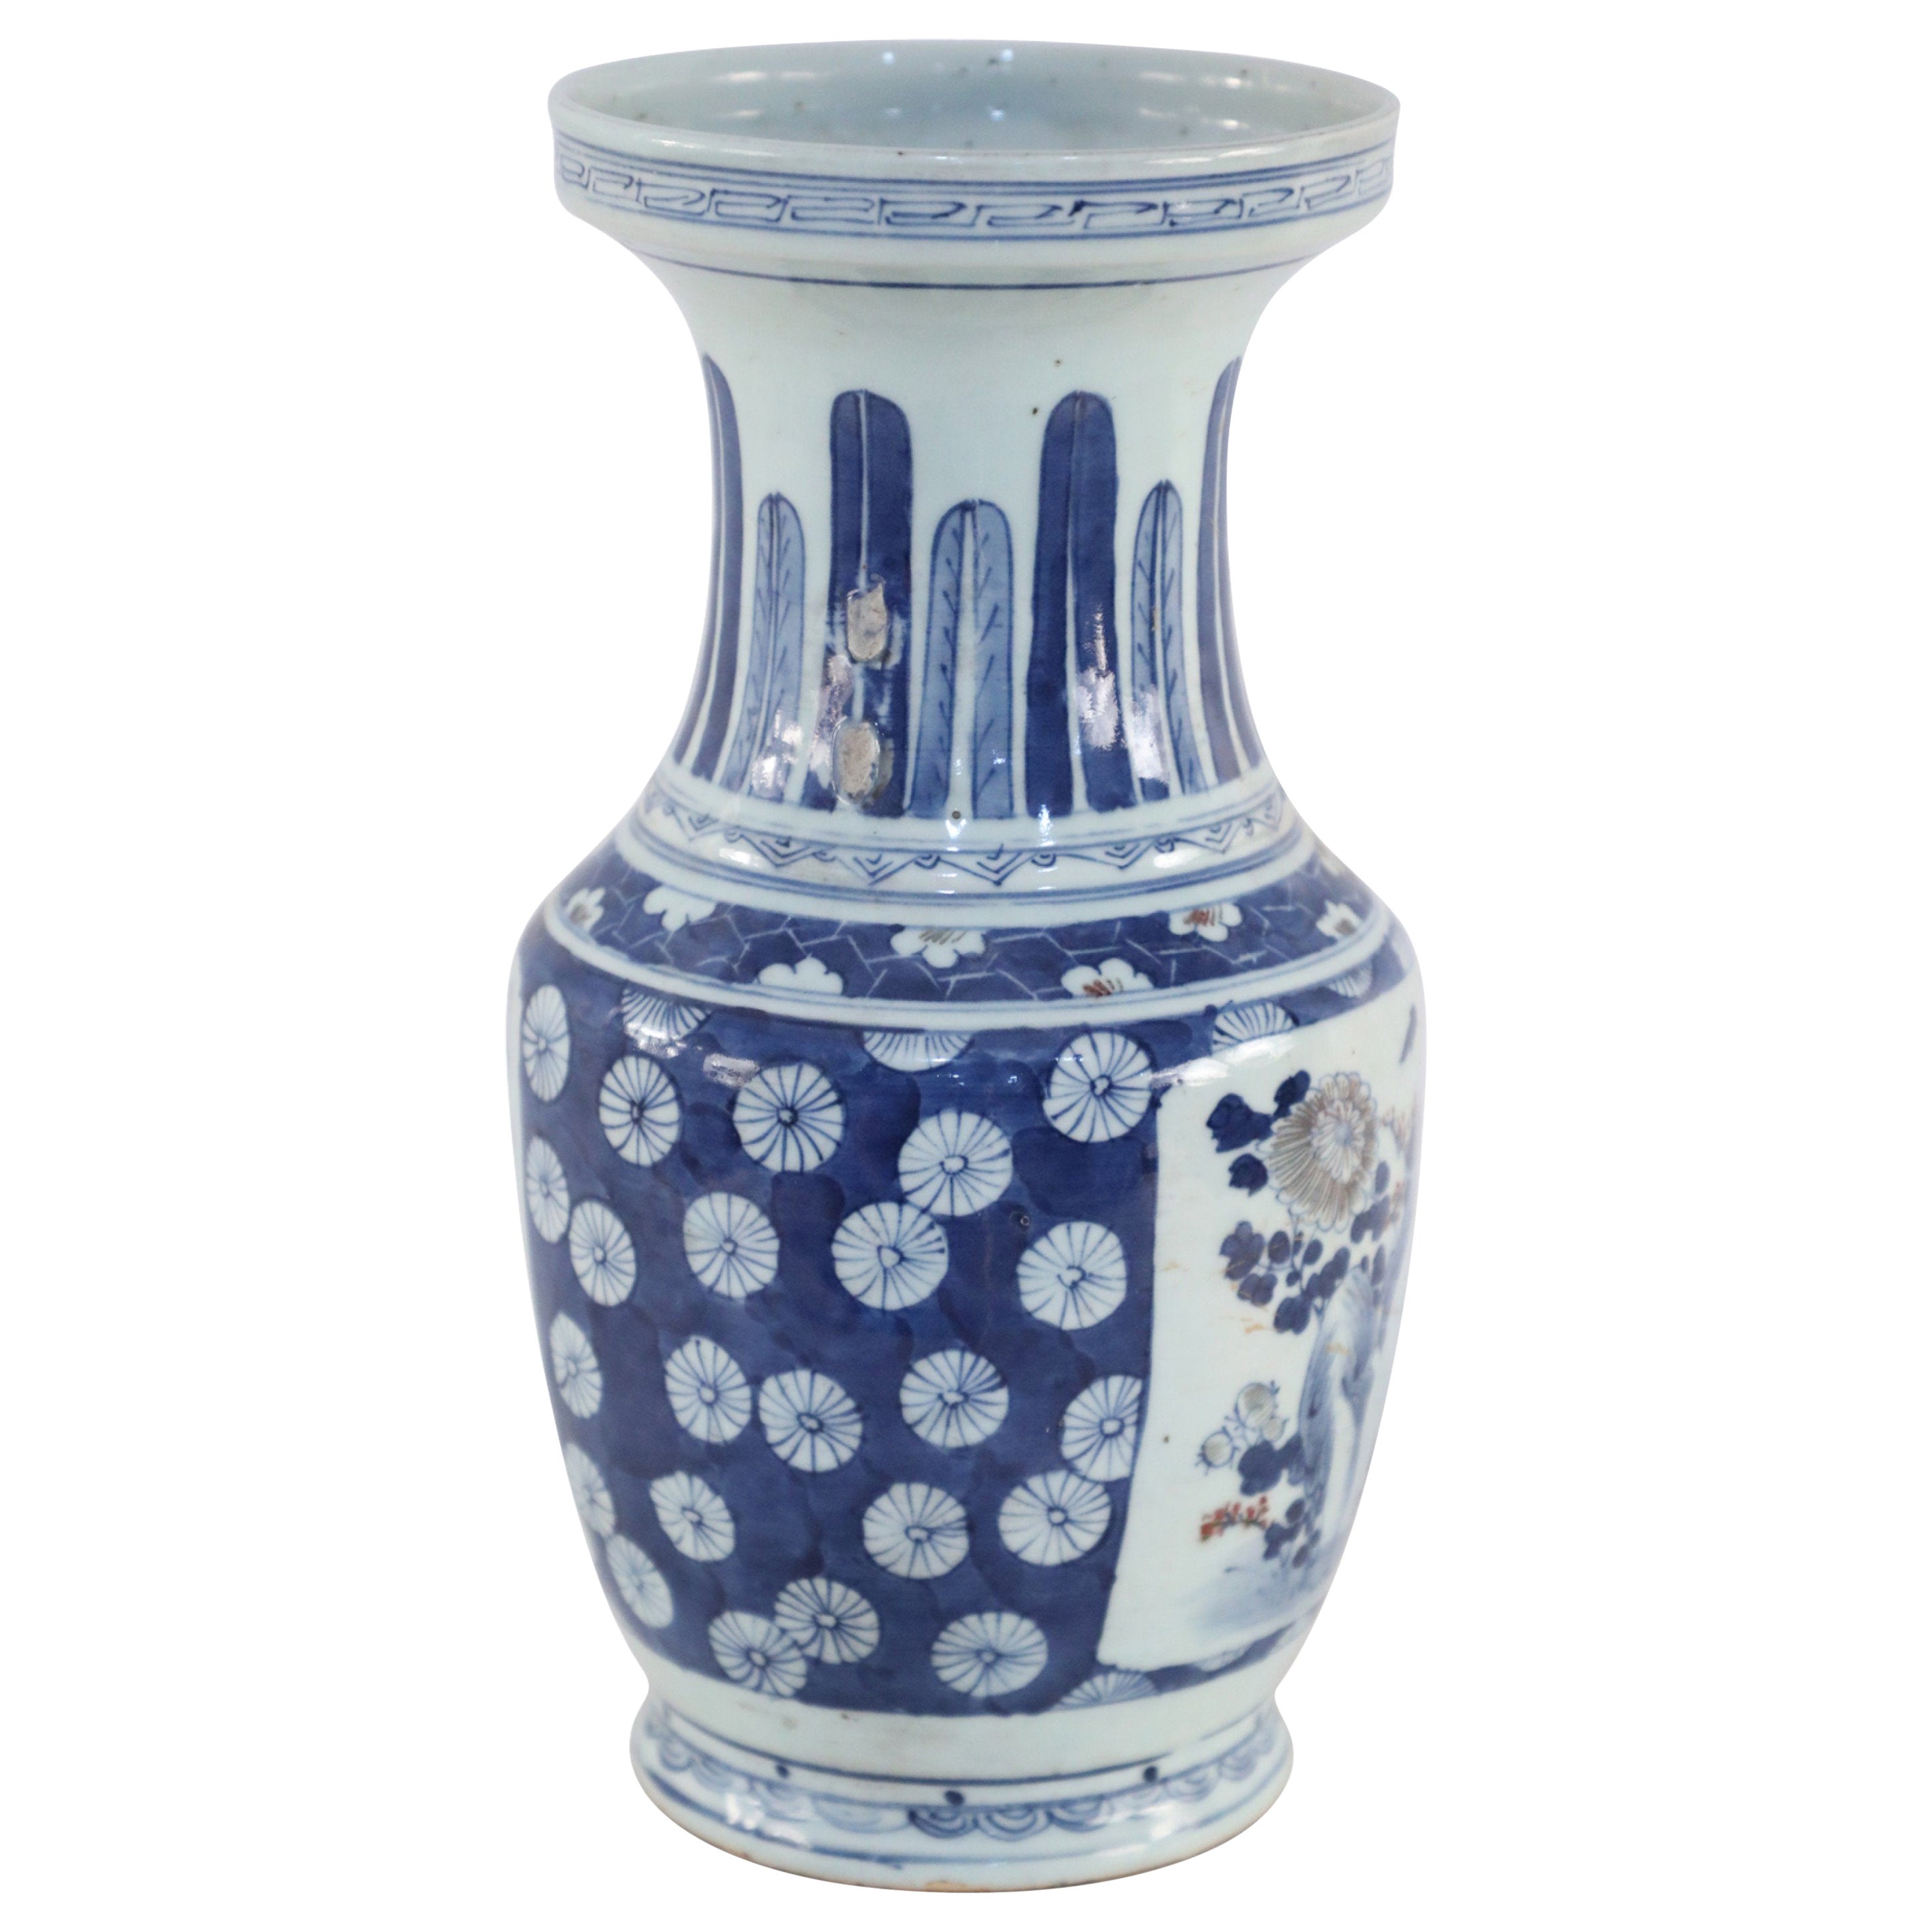 Chinesische Porzellanurne mit weißem und blauem Blumen- und Federmotiv, Chinesisch